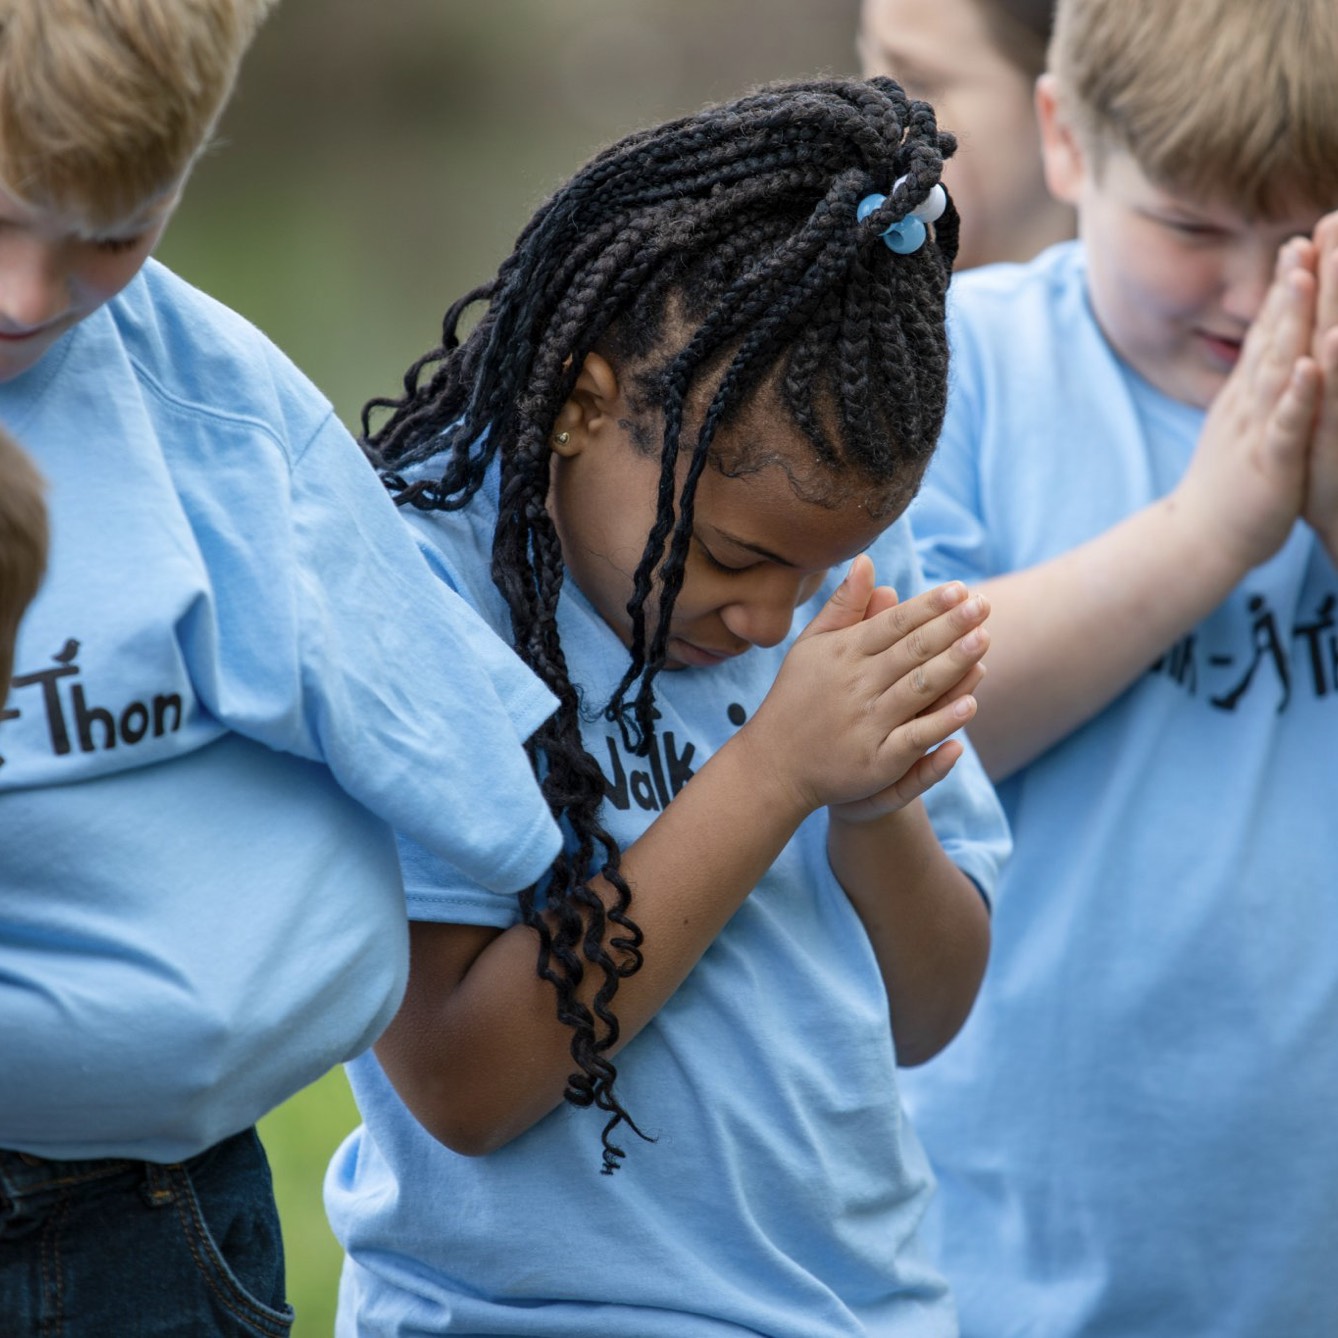 Children standing outside in prayer